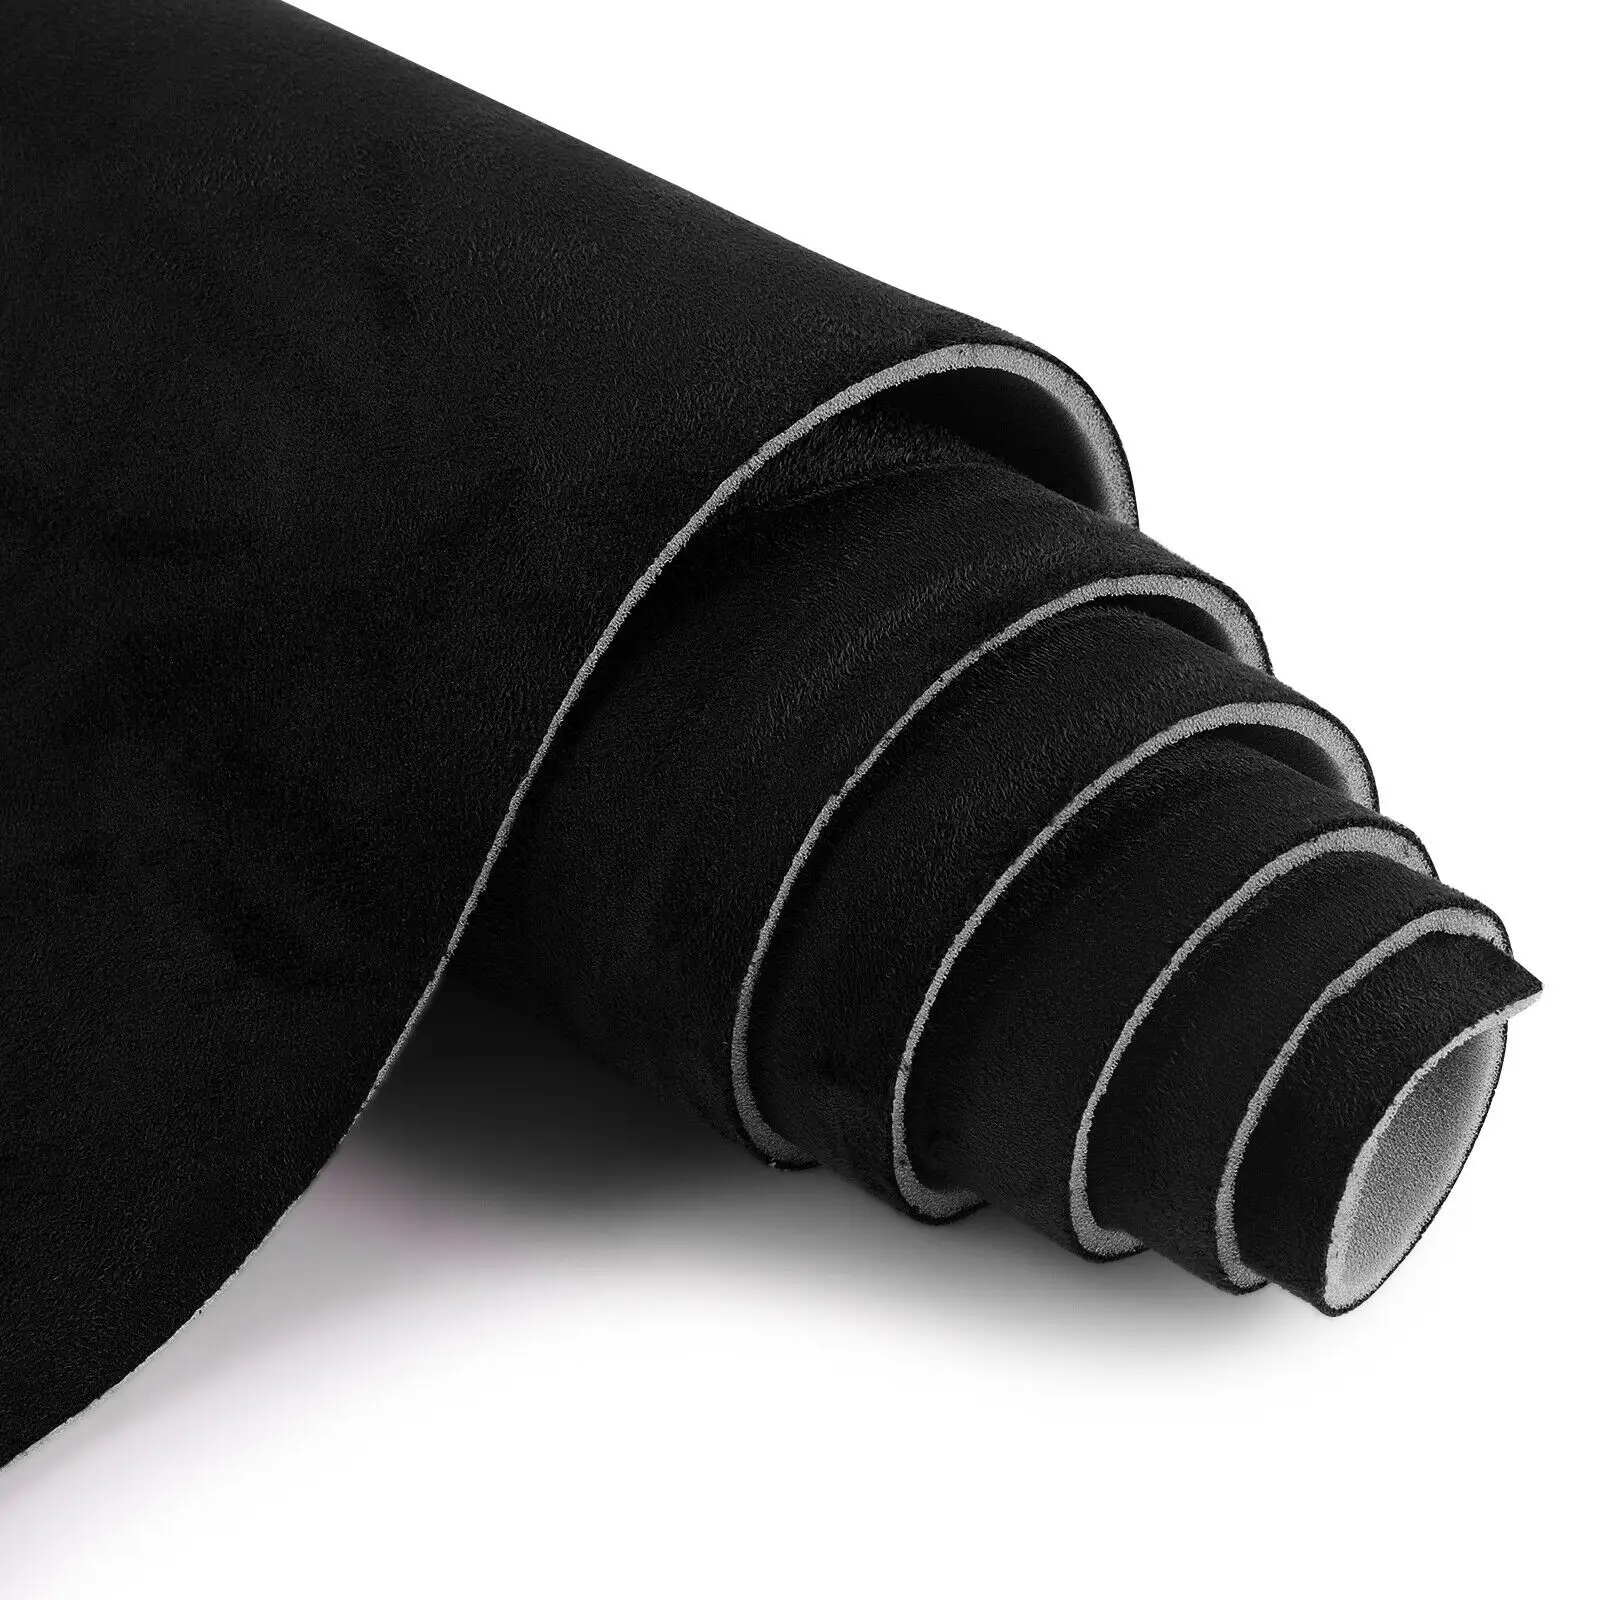 Tissu en daim extensible noir pour intérieur automobile, doublure pour tapisserie, vente en gros